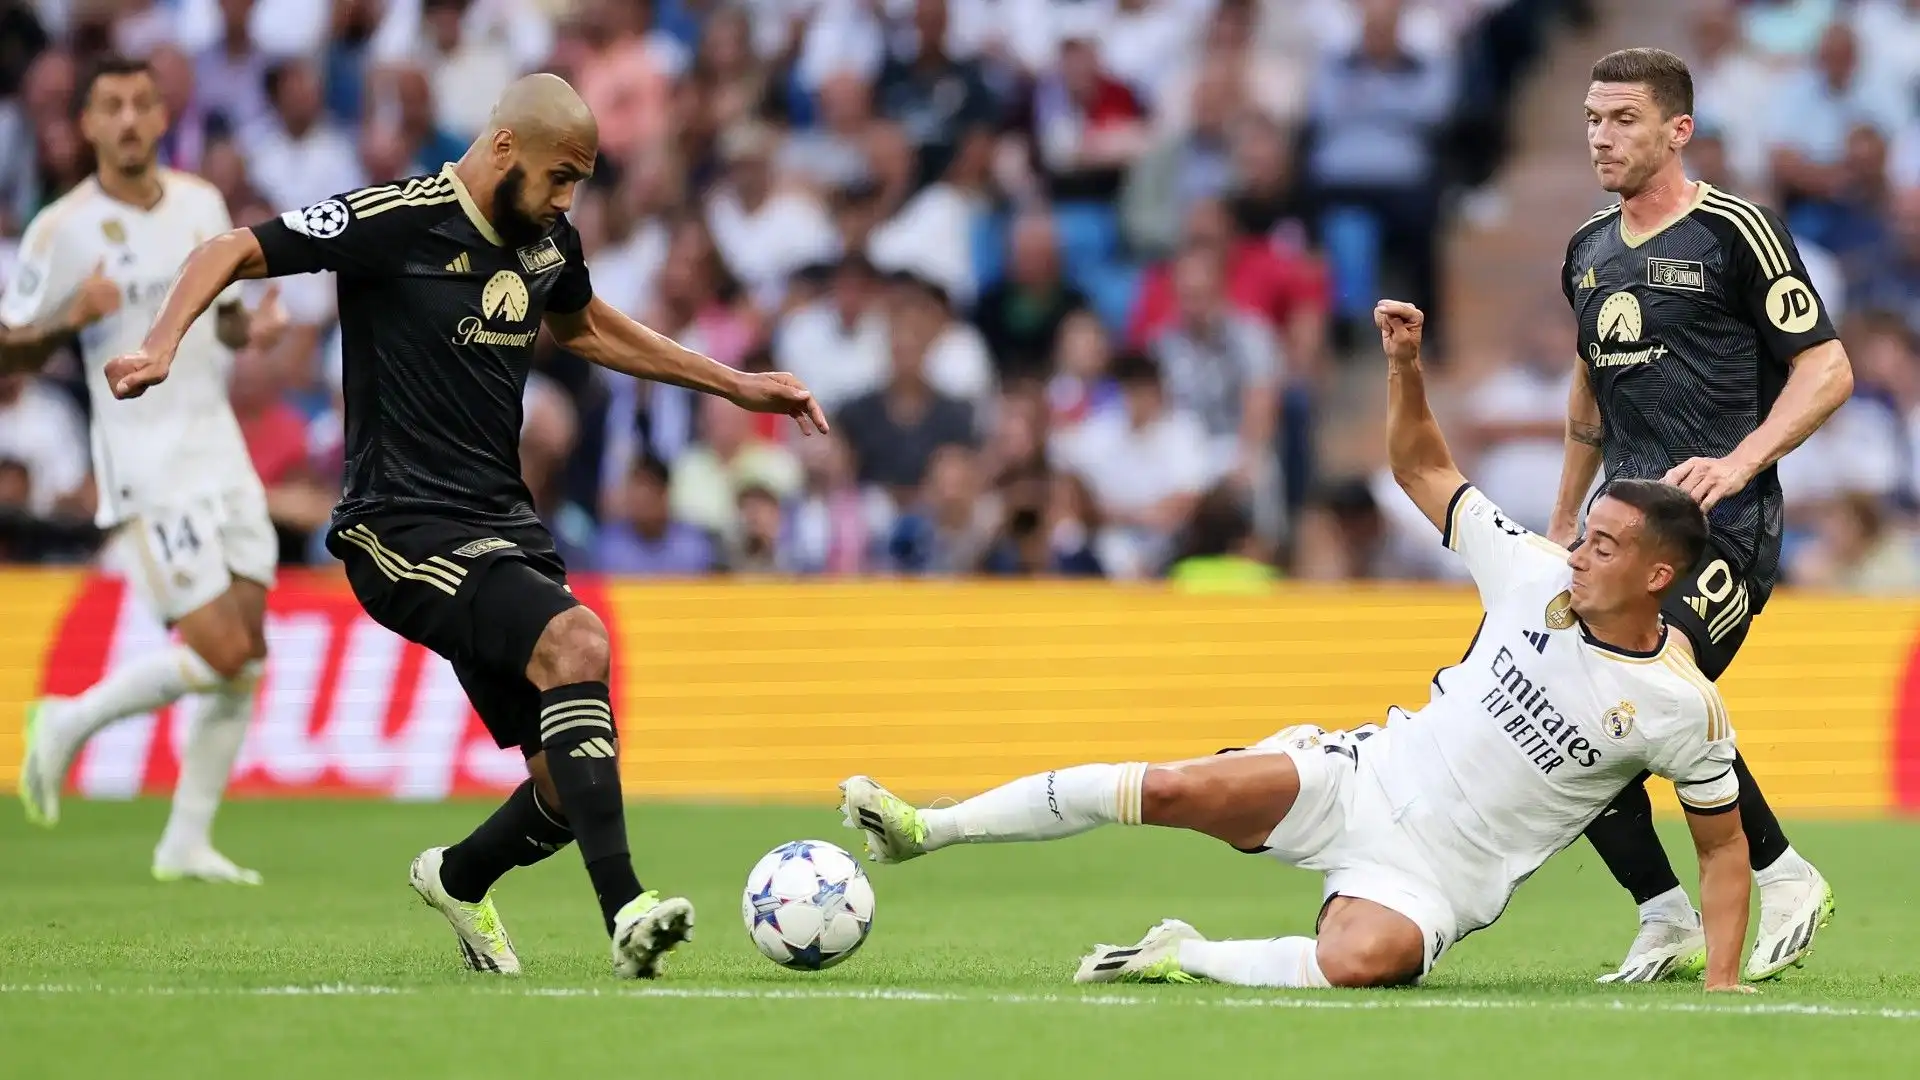 Finora con il Real Madrid Lucas Vasquez ha totalizzato 317 partite, 33 gol e 58 assist